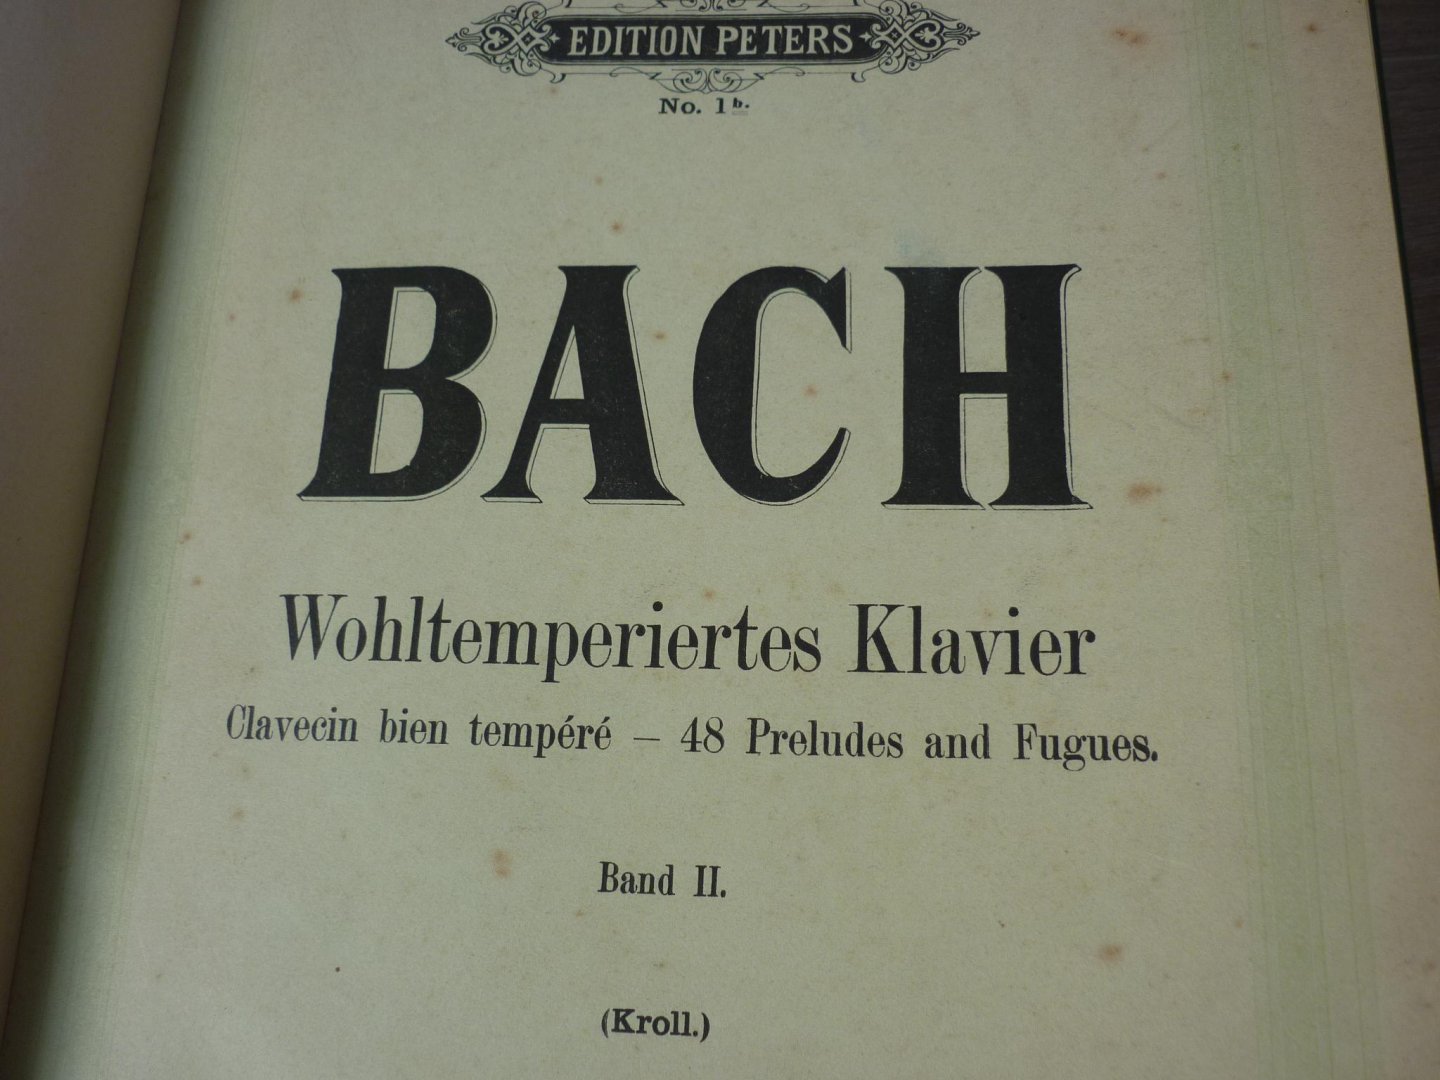 Bach J.S. (1685 – 1750) - Wohltemperiertes Klavier - Deel II; 48 Preludes and Fugues; Kritischen ausgabe nach handschriftlichen quellen bearbeitet und mit fingersatz versehen von Franz Kroll